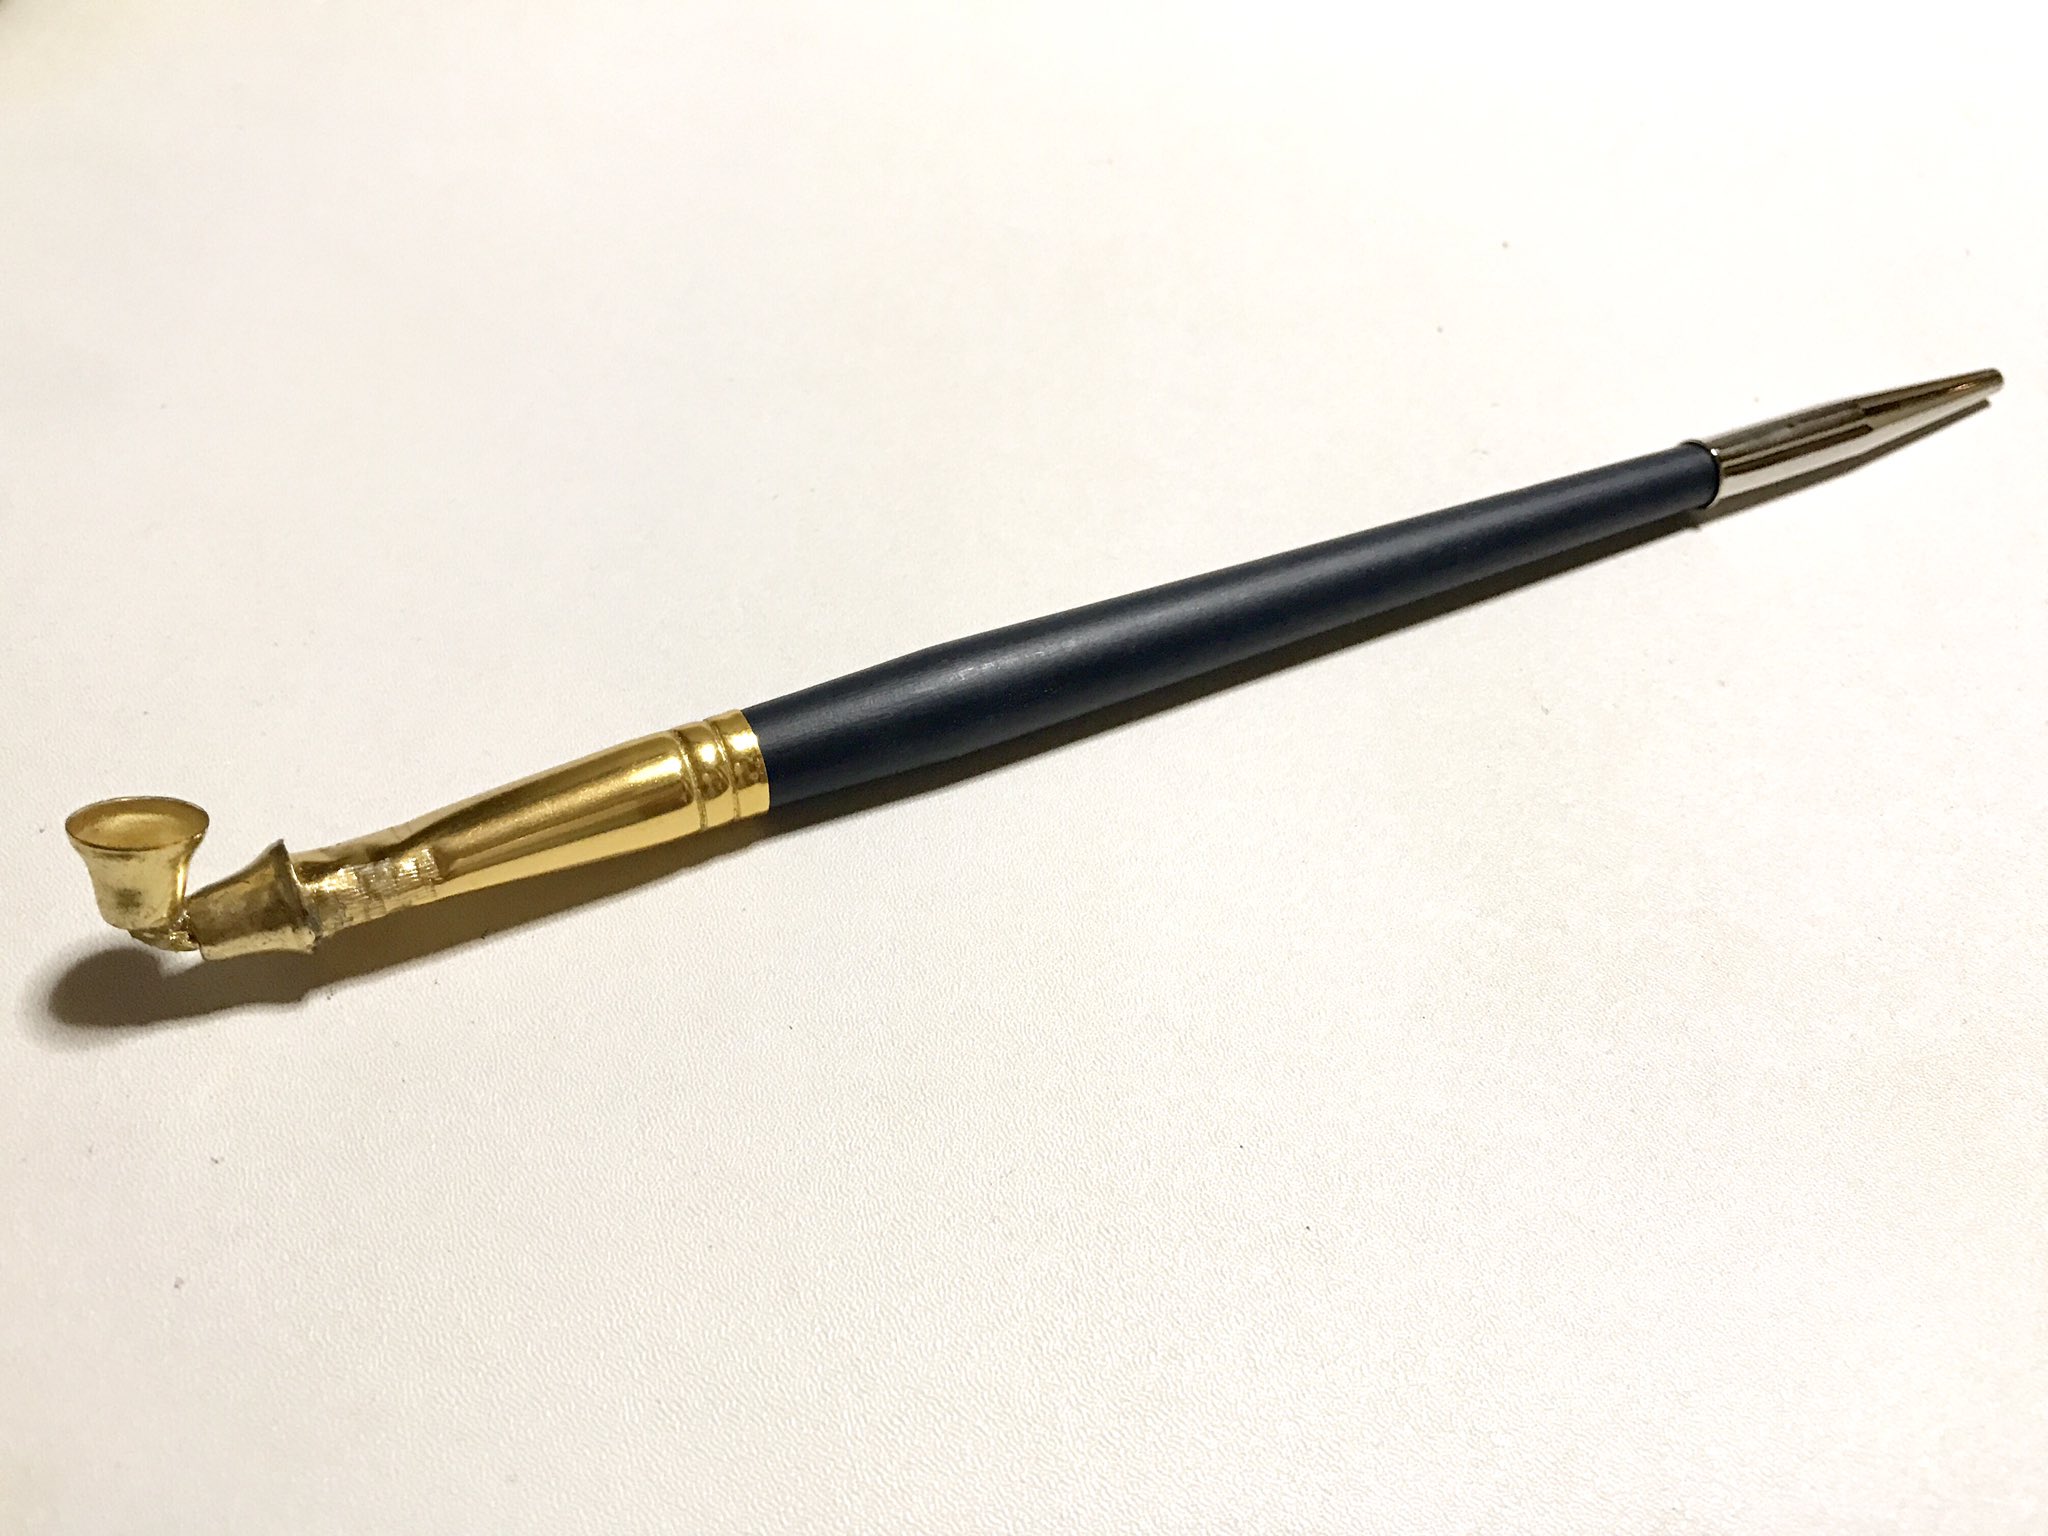 奏多 私のおすすめ煙管の作り方なんだけど 材料 絵の具の筆1本 小さいベル2つ 鉛筆のキャップ 金属系 遠目から見たらそれっぽいはず